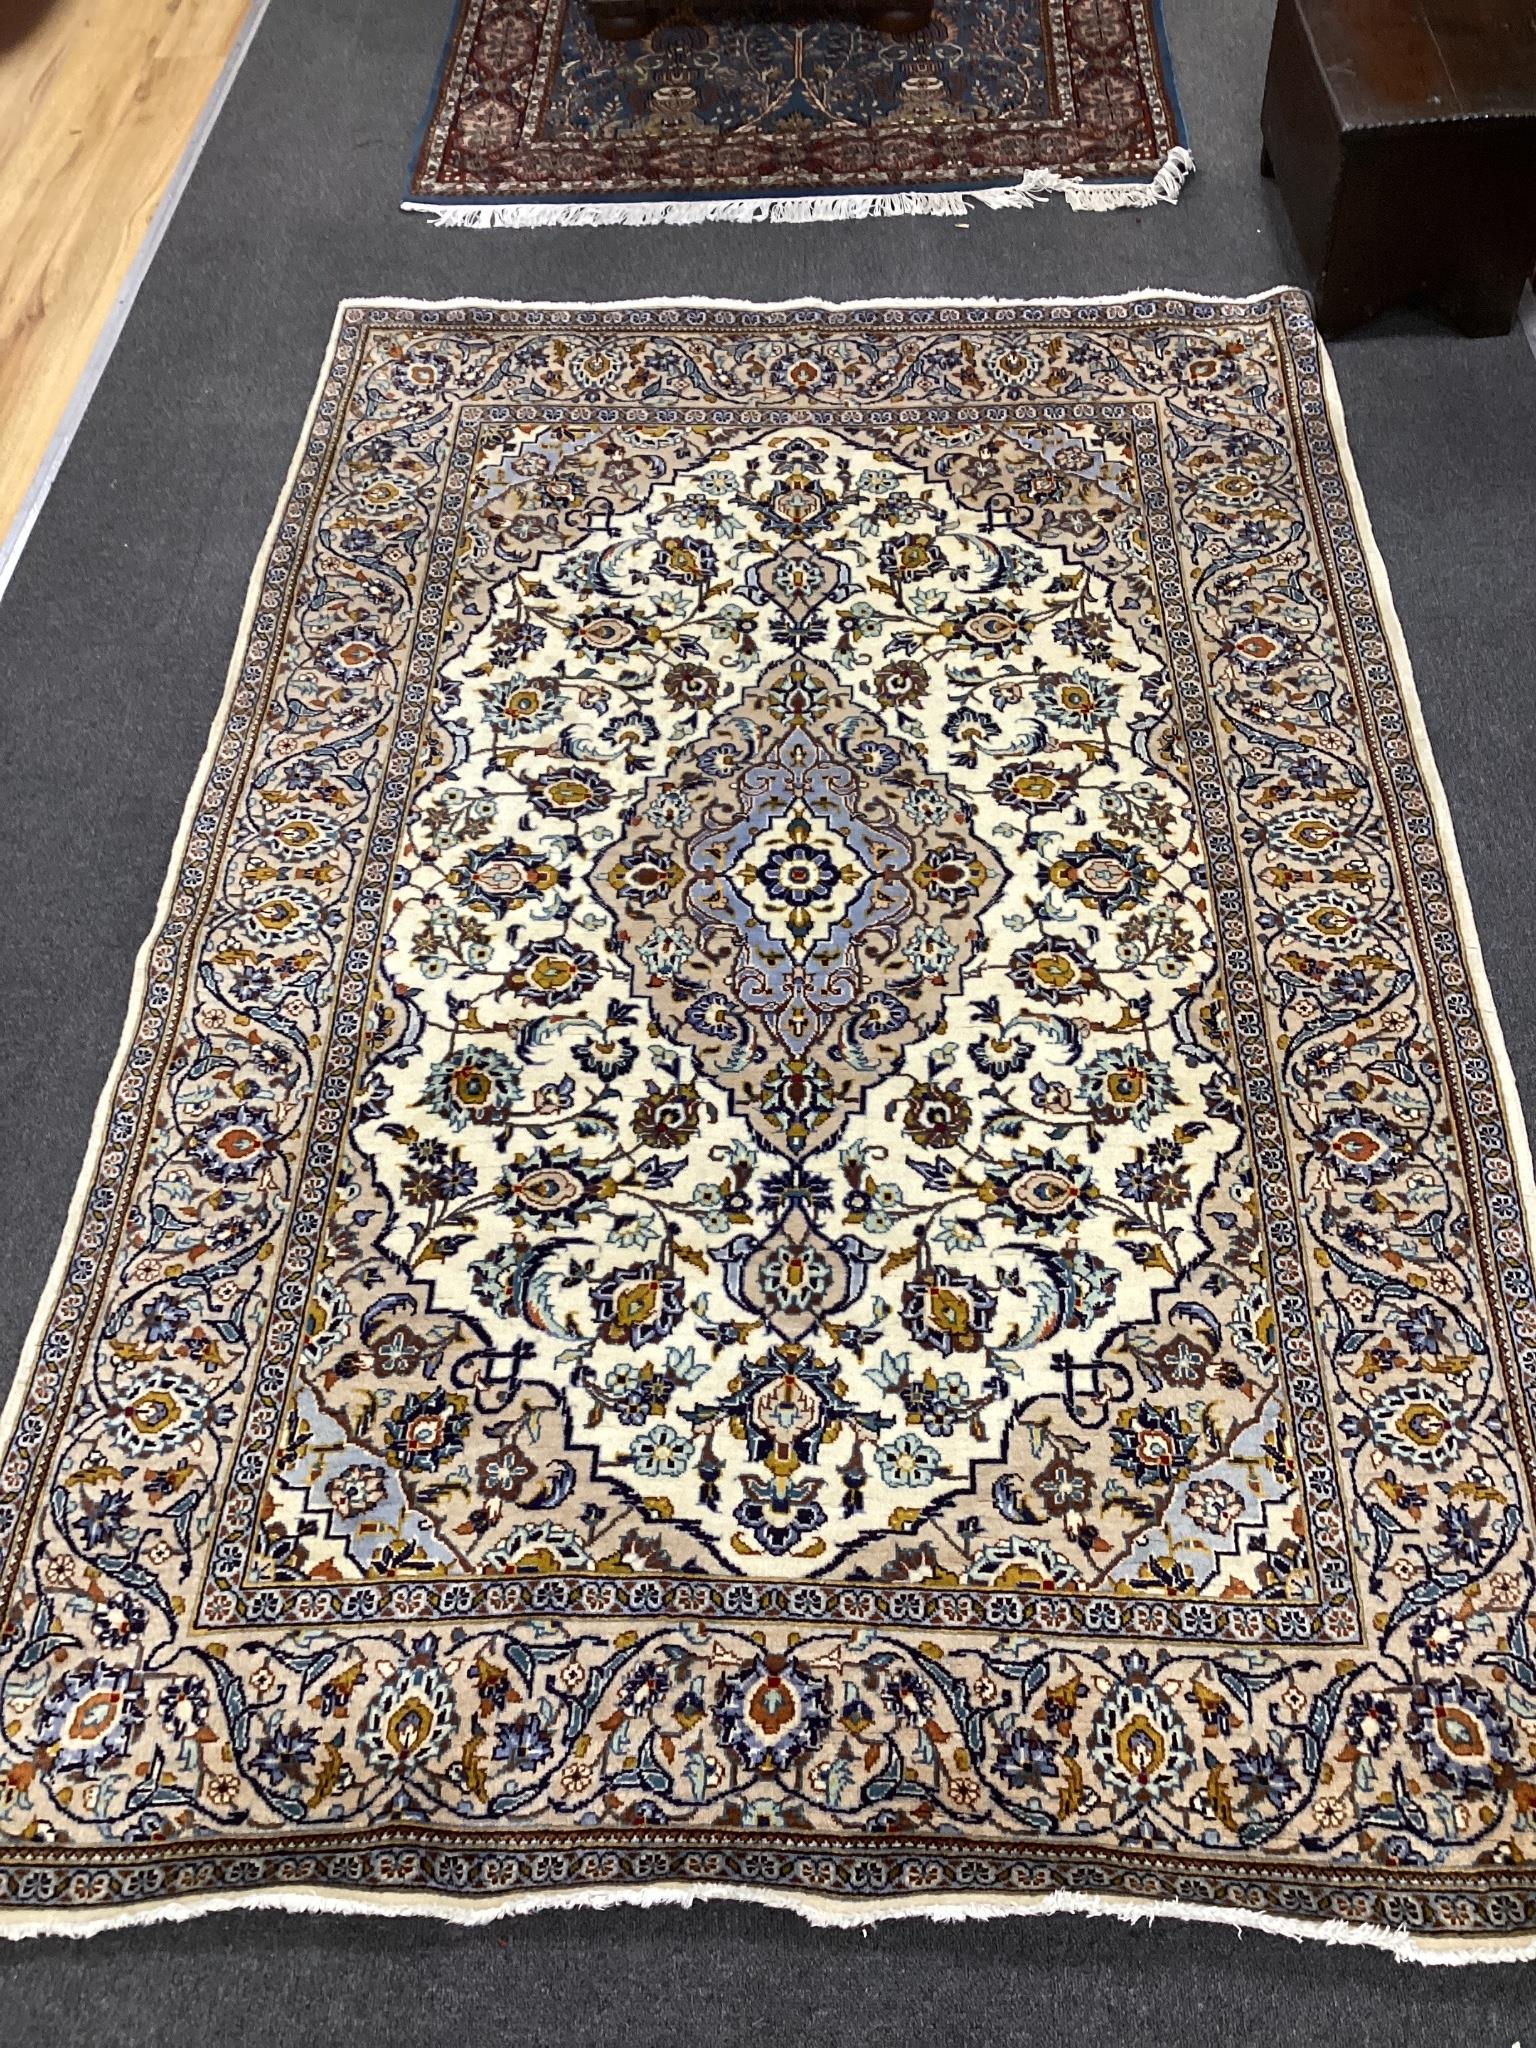 A modern Kashan ivory ground rug, 220cm x 145cm